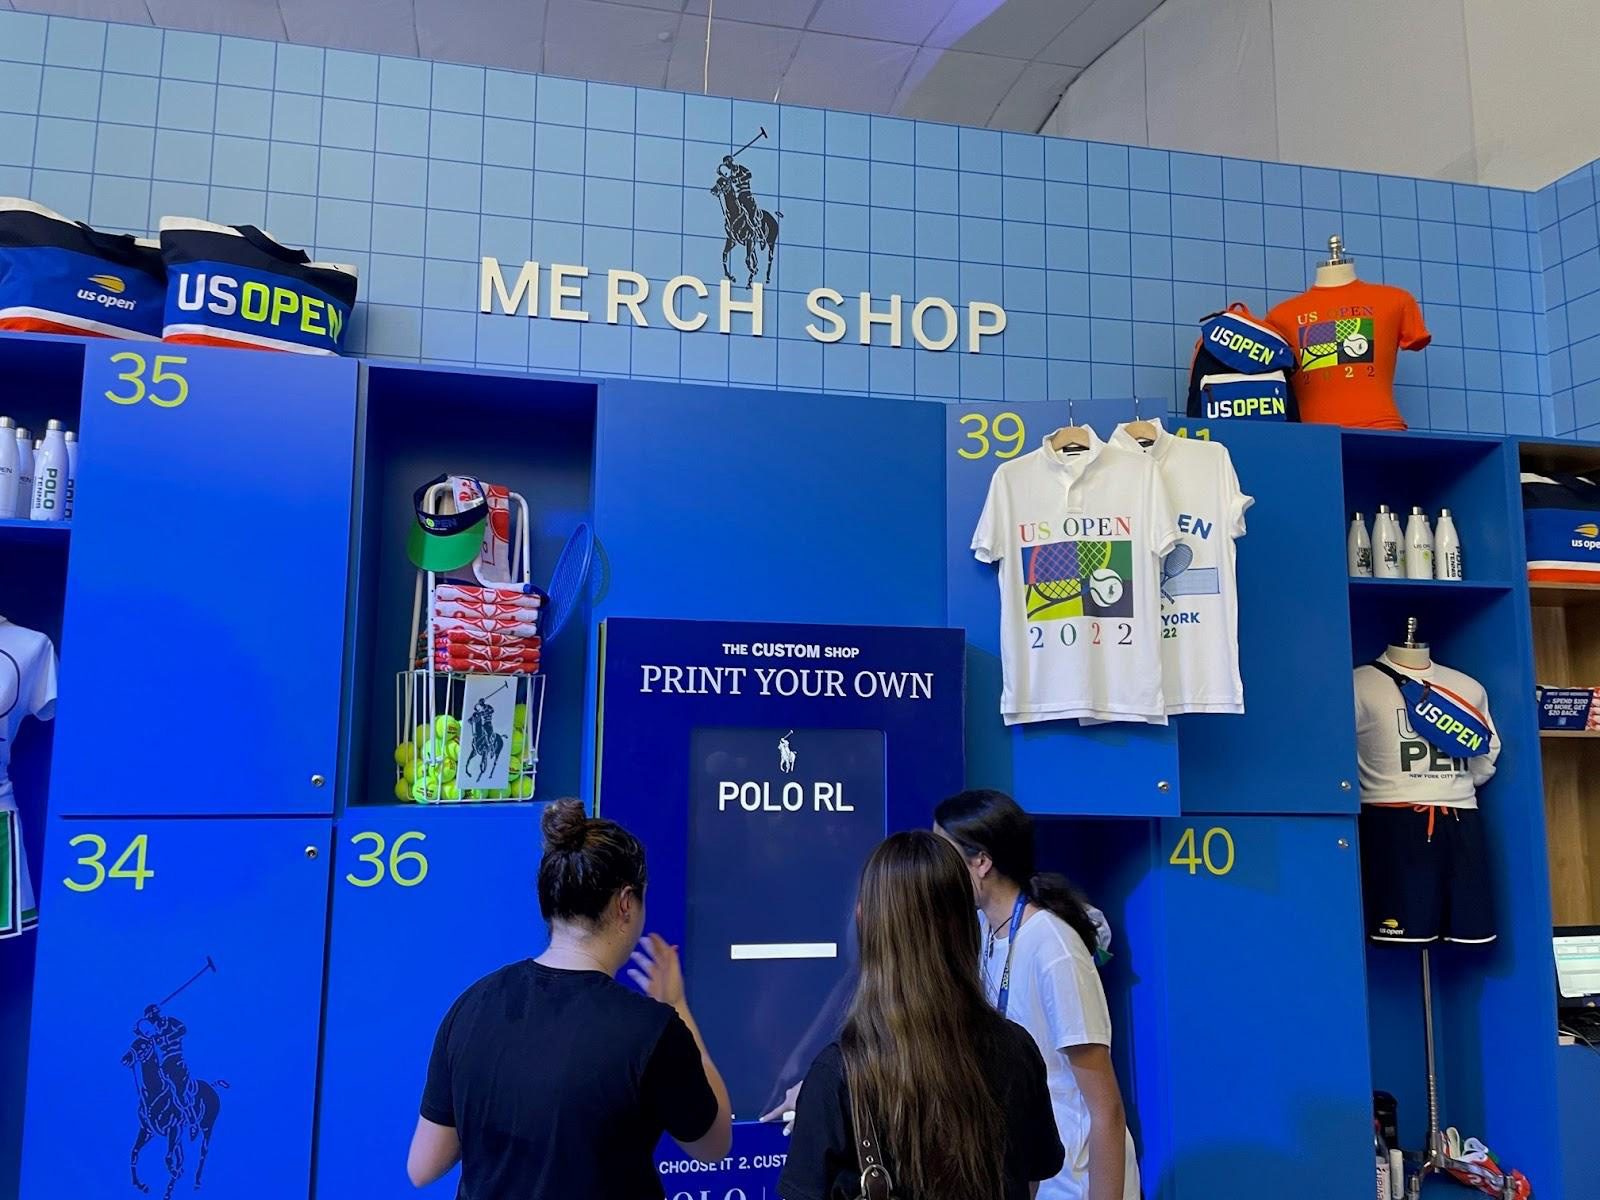 Merch Shop - US Open